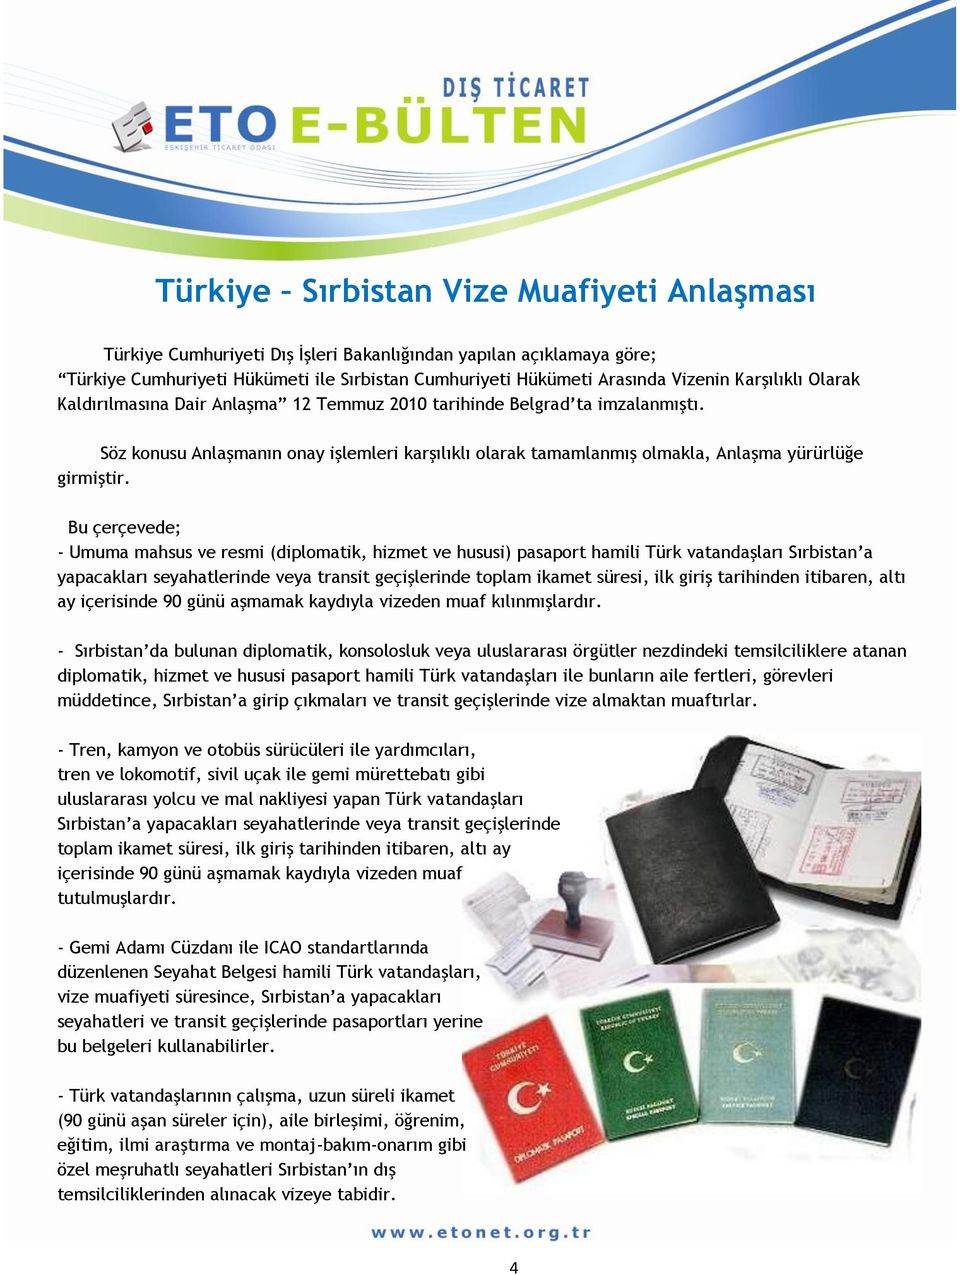 Bu çerçevede; - Umuma mahsus ve resmi (diplomatik, hizmet ve hususi) pasaport hamili Türk vatandaşları Sırbistan a yapacakları seyahatlerinde veya transit geçişlerinde toplam ikamet süresi, ilk giriş